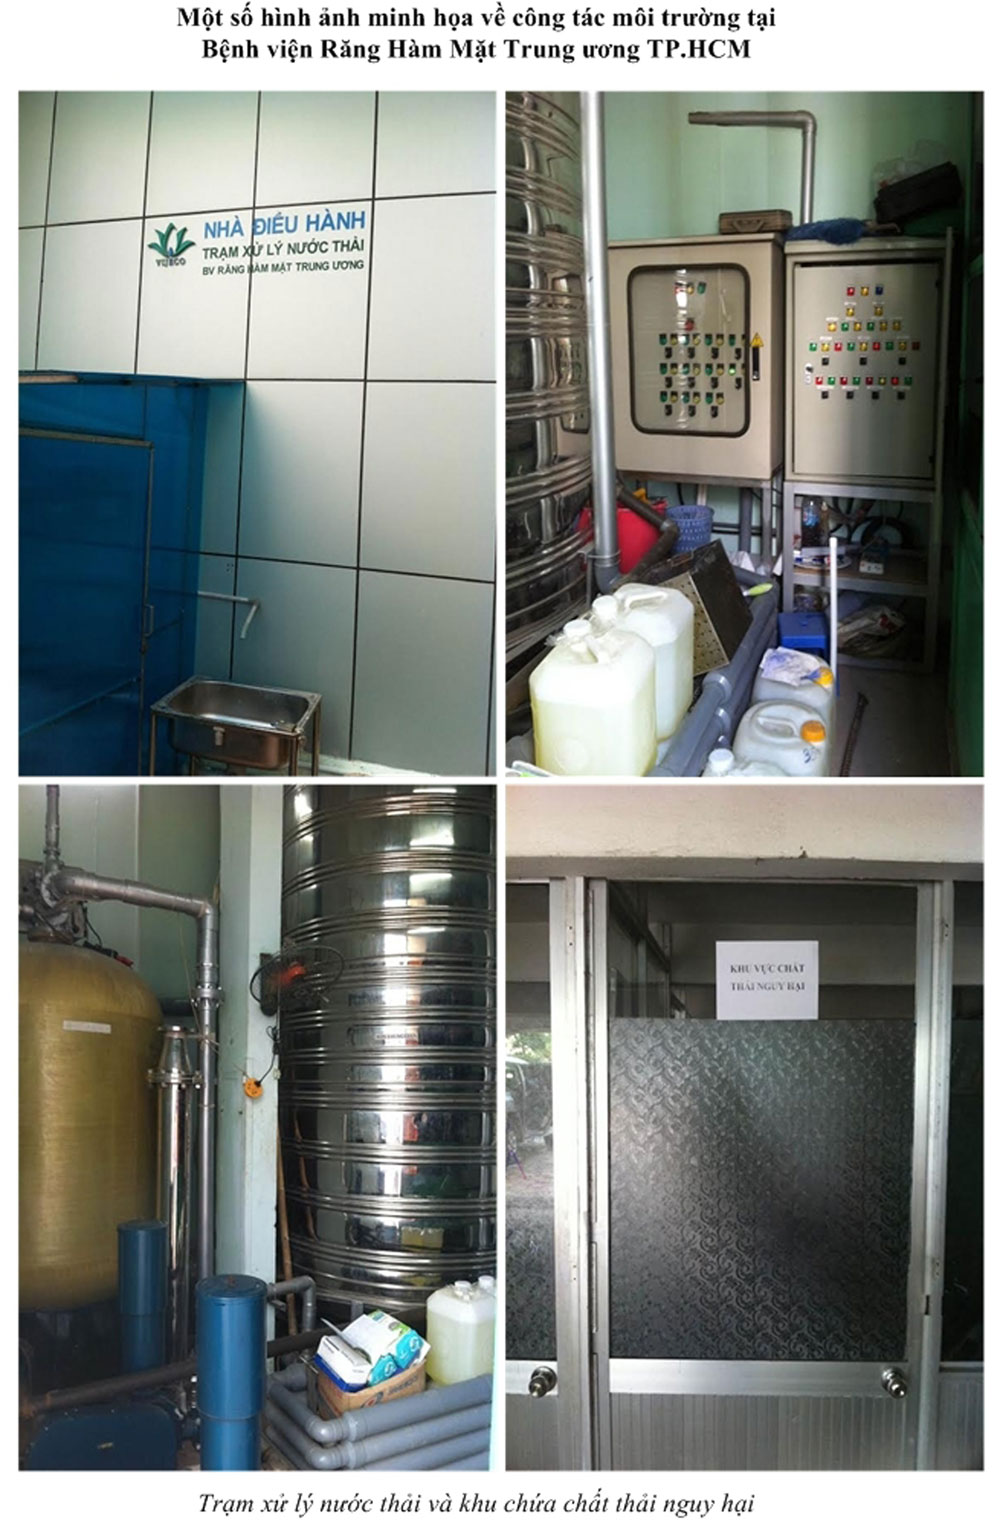 Trạm xử lý nước thải và khu chứa chất thải nguy hại tại BV Răng Hàm Mặt trung ương TP.HCM - Ảnh: BV Răng Hàm Mặt TP.HCM cung cấp